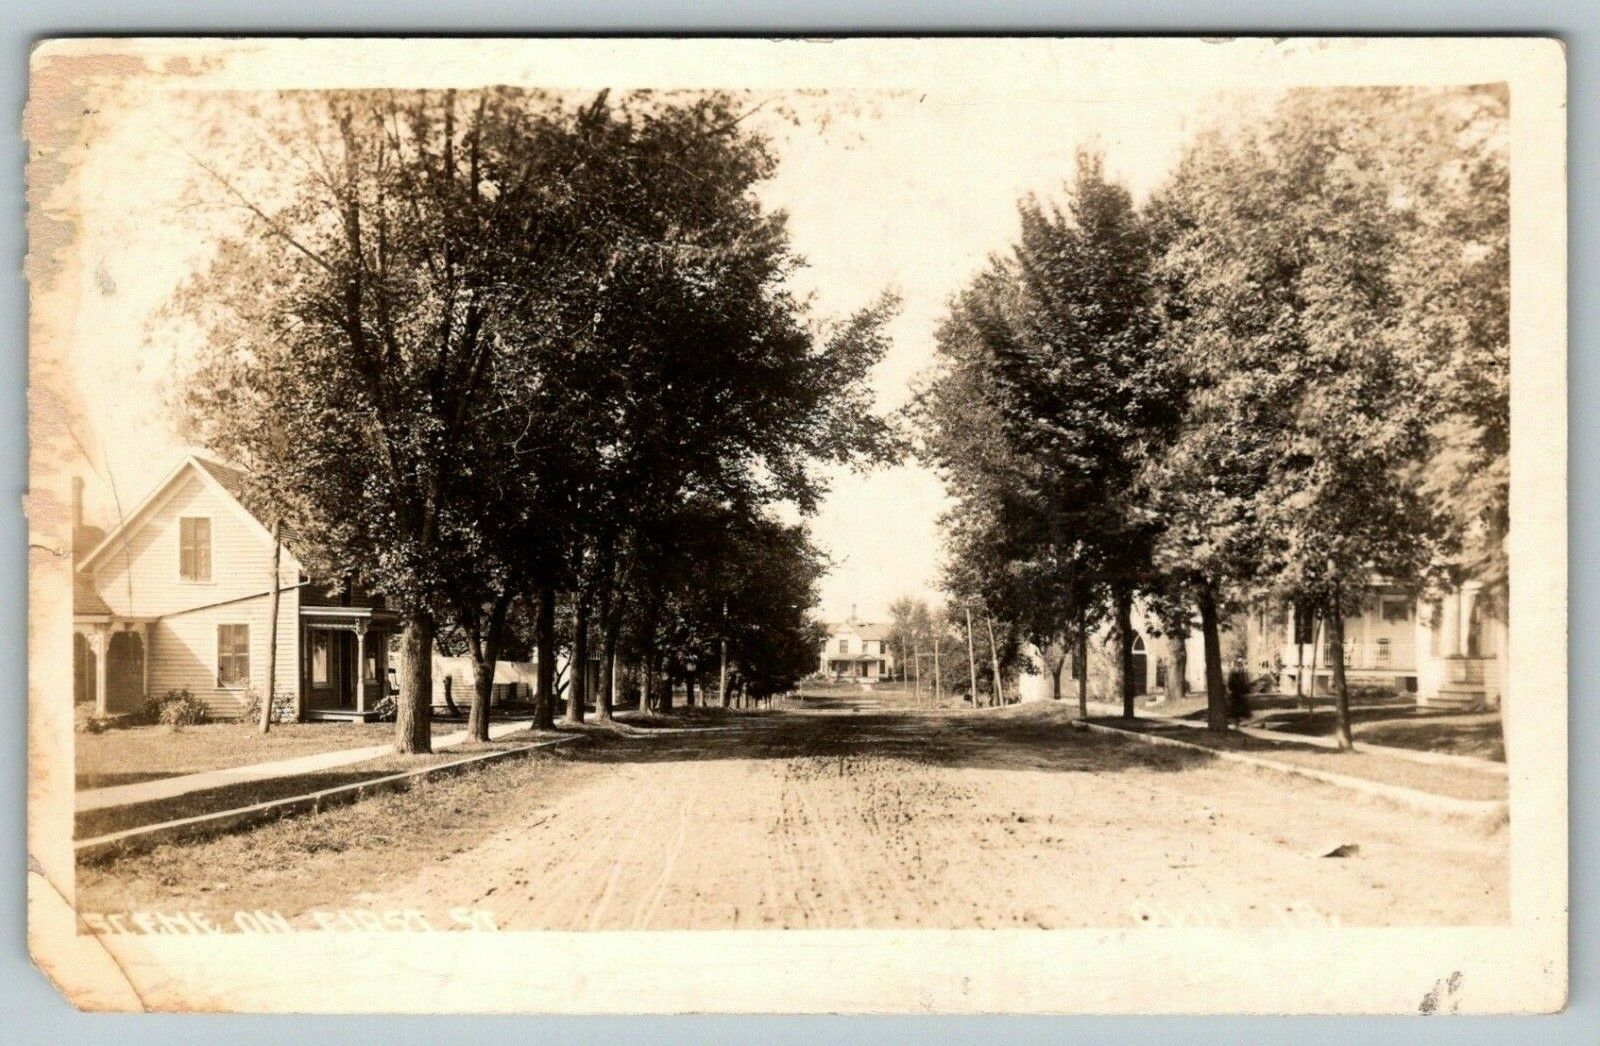 First Street, Olin, Iowa